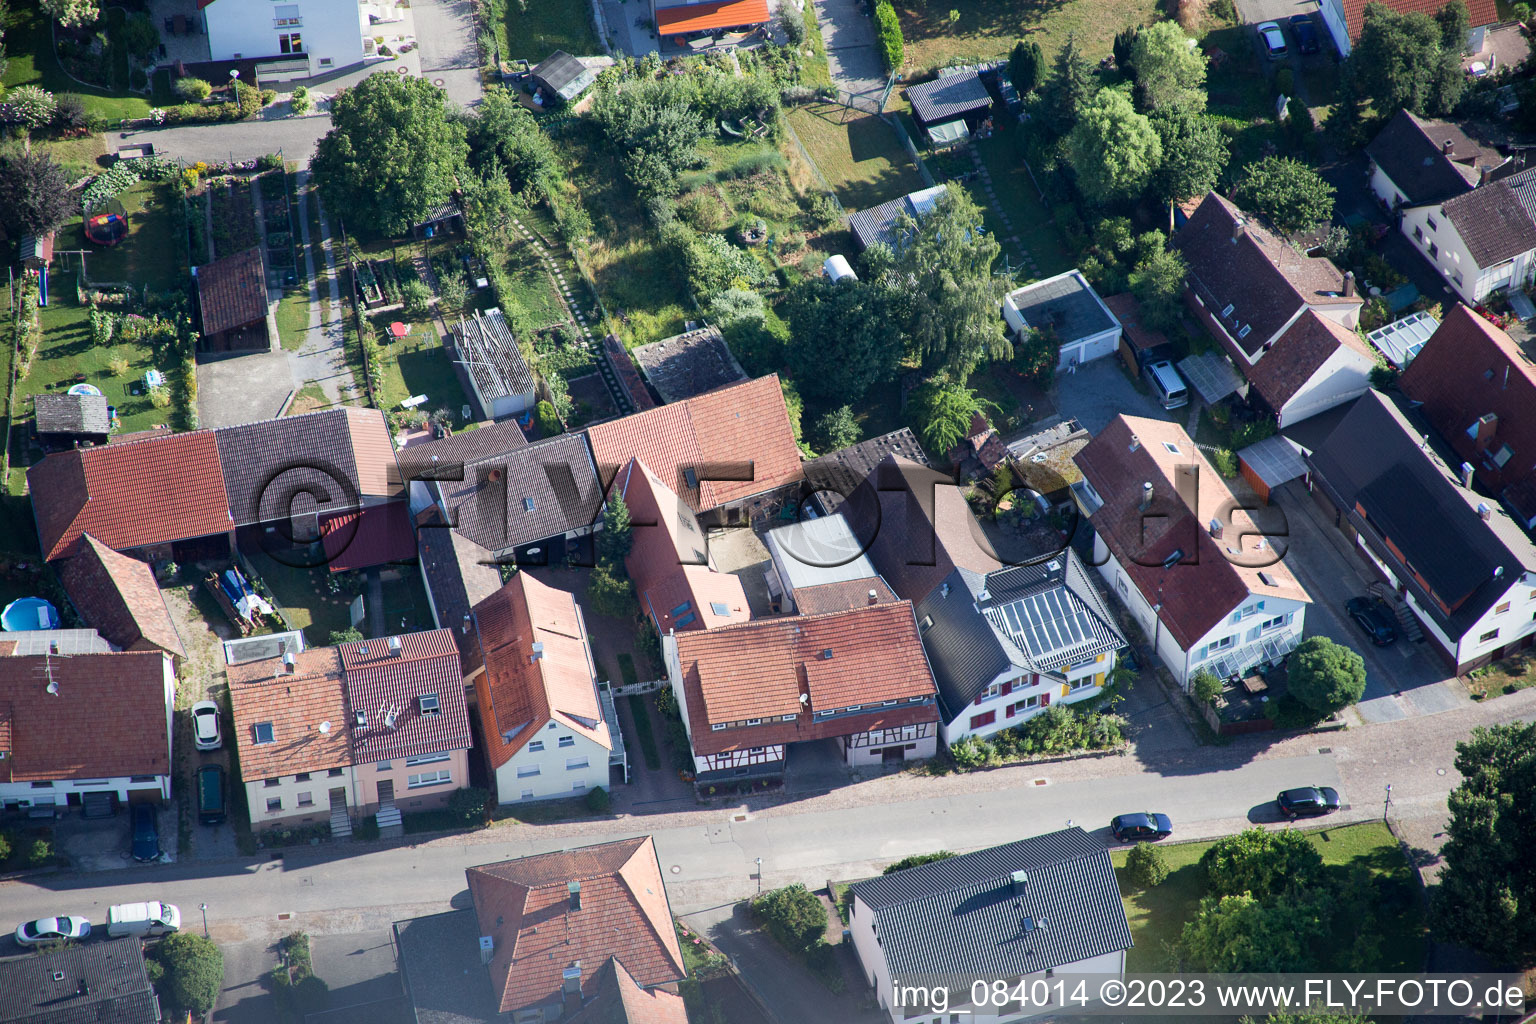 Ortsteil Schluttenbach in Ettlingen im Bundesland Baden-Württemberg, Deutschland aus der Luft betrachtet